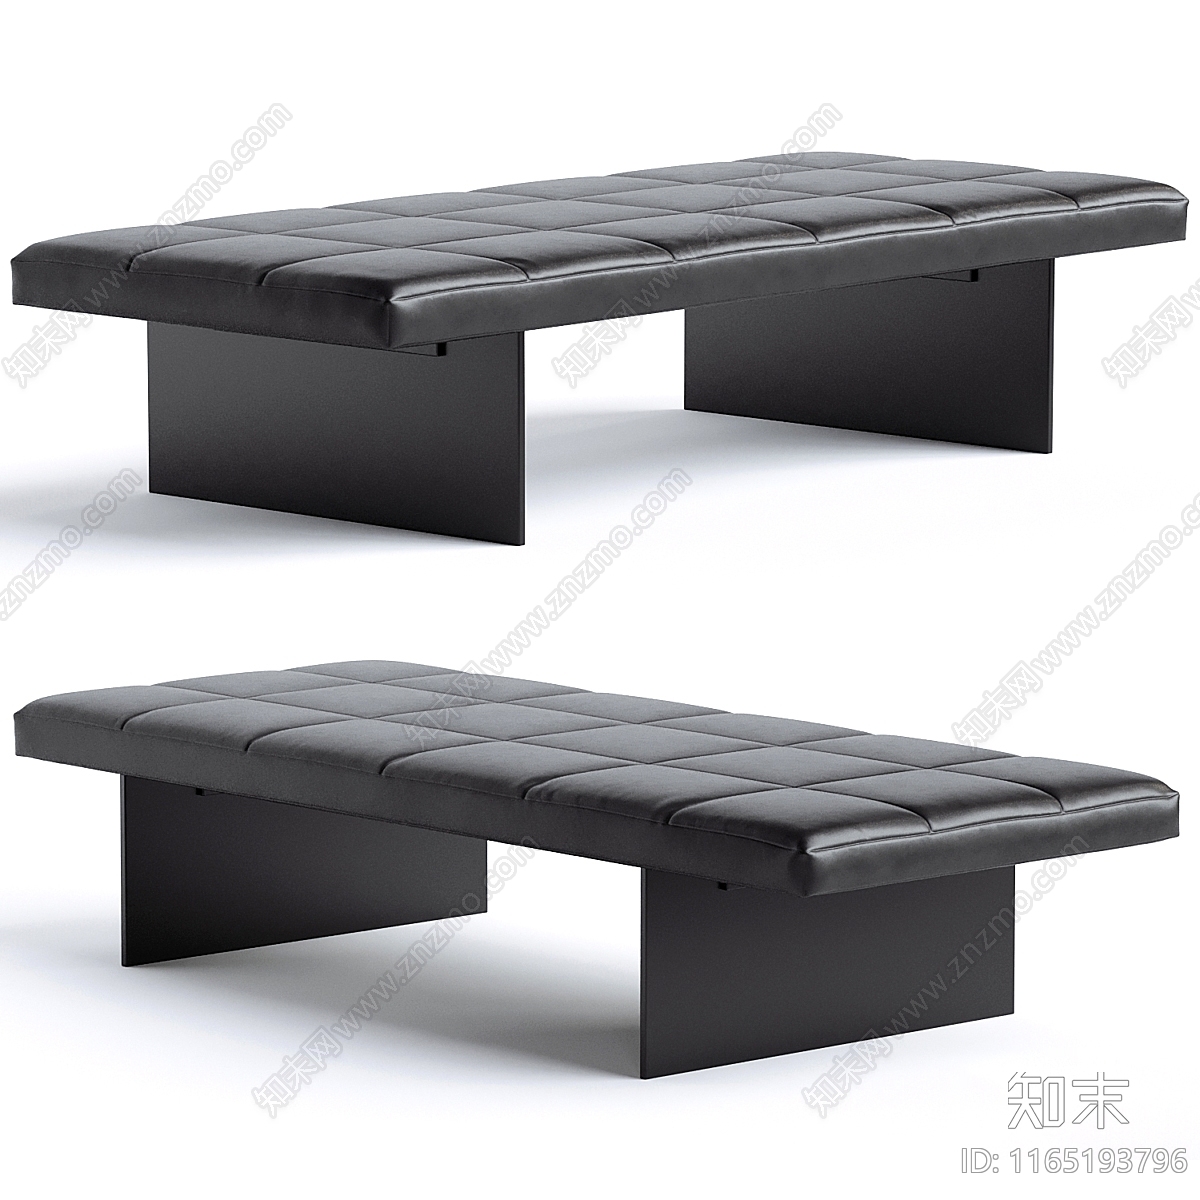 现代简约沙发凳3D模型下载【ID:1165193796】